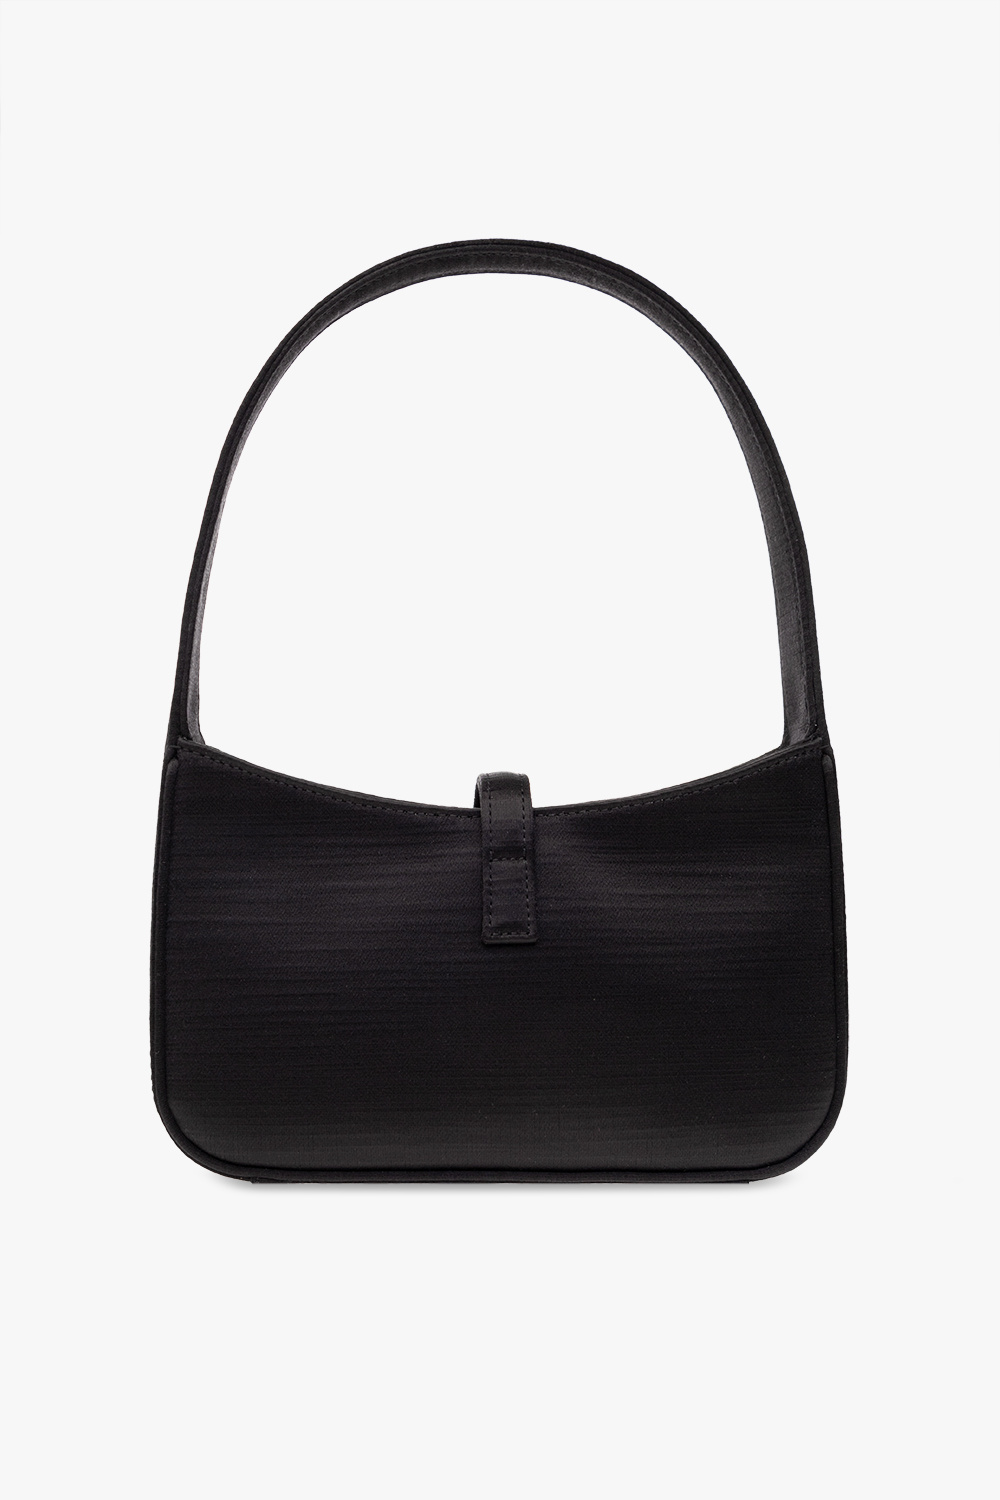 Black 'Le 5 a 7 Mini' handbag Saint Laurent - Vitkac Canada